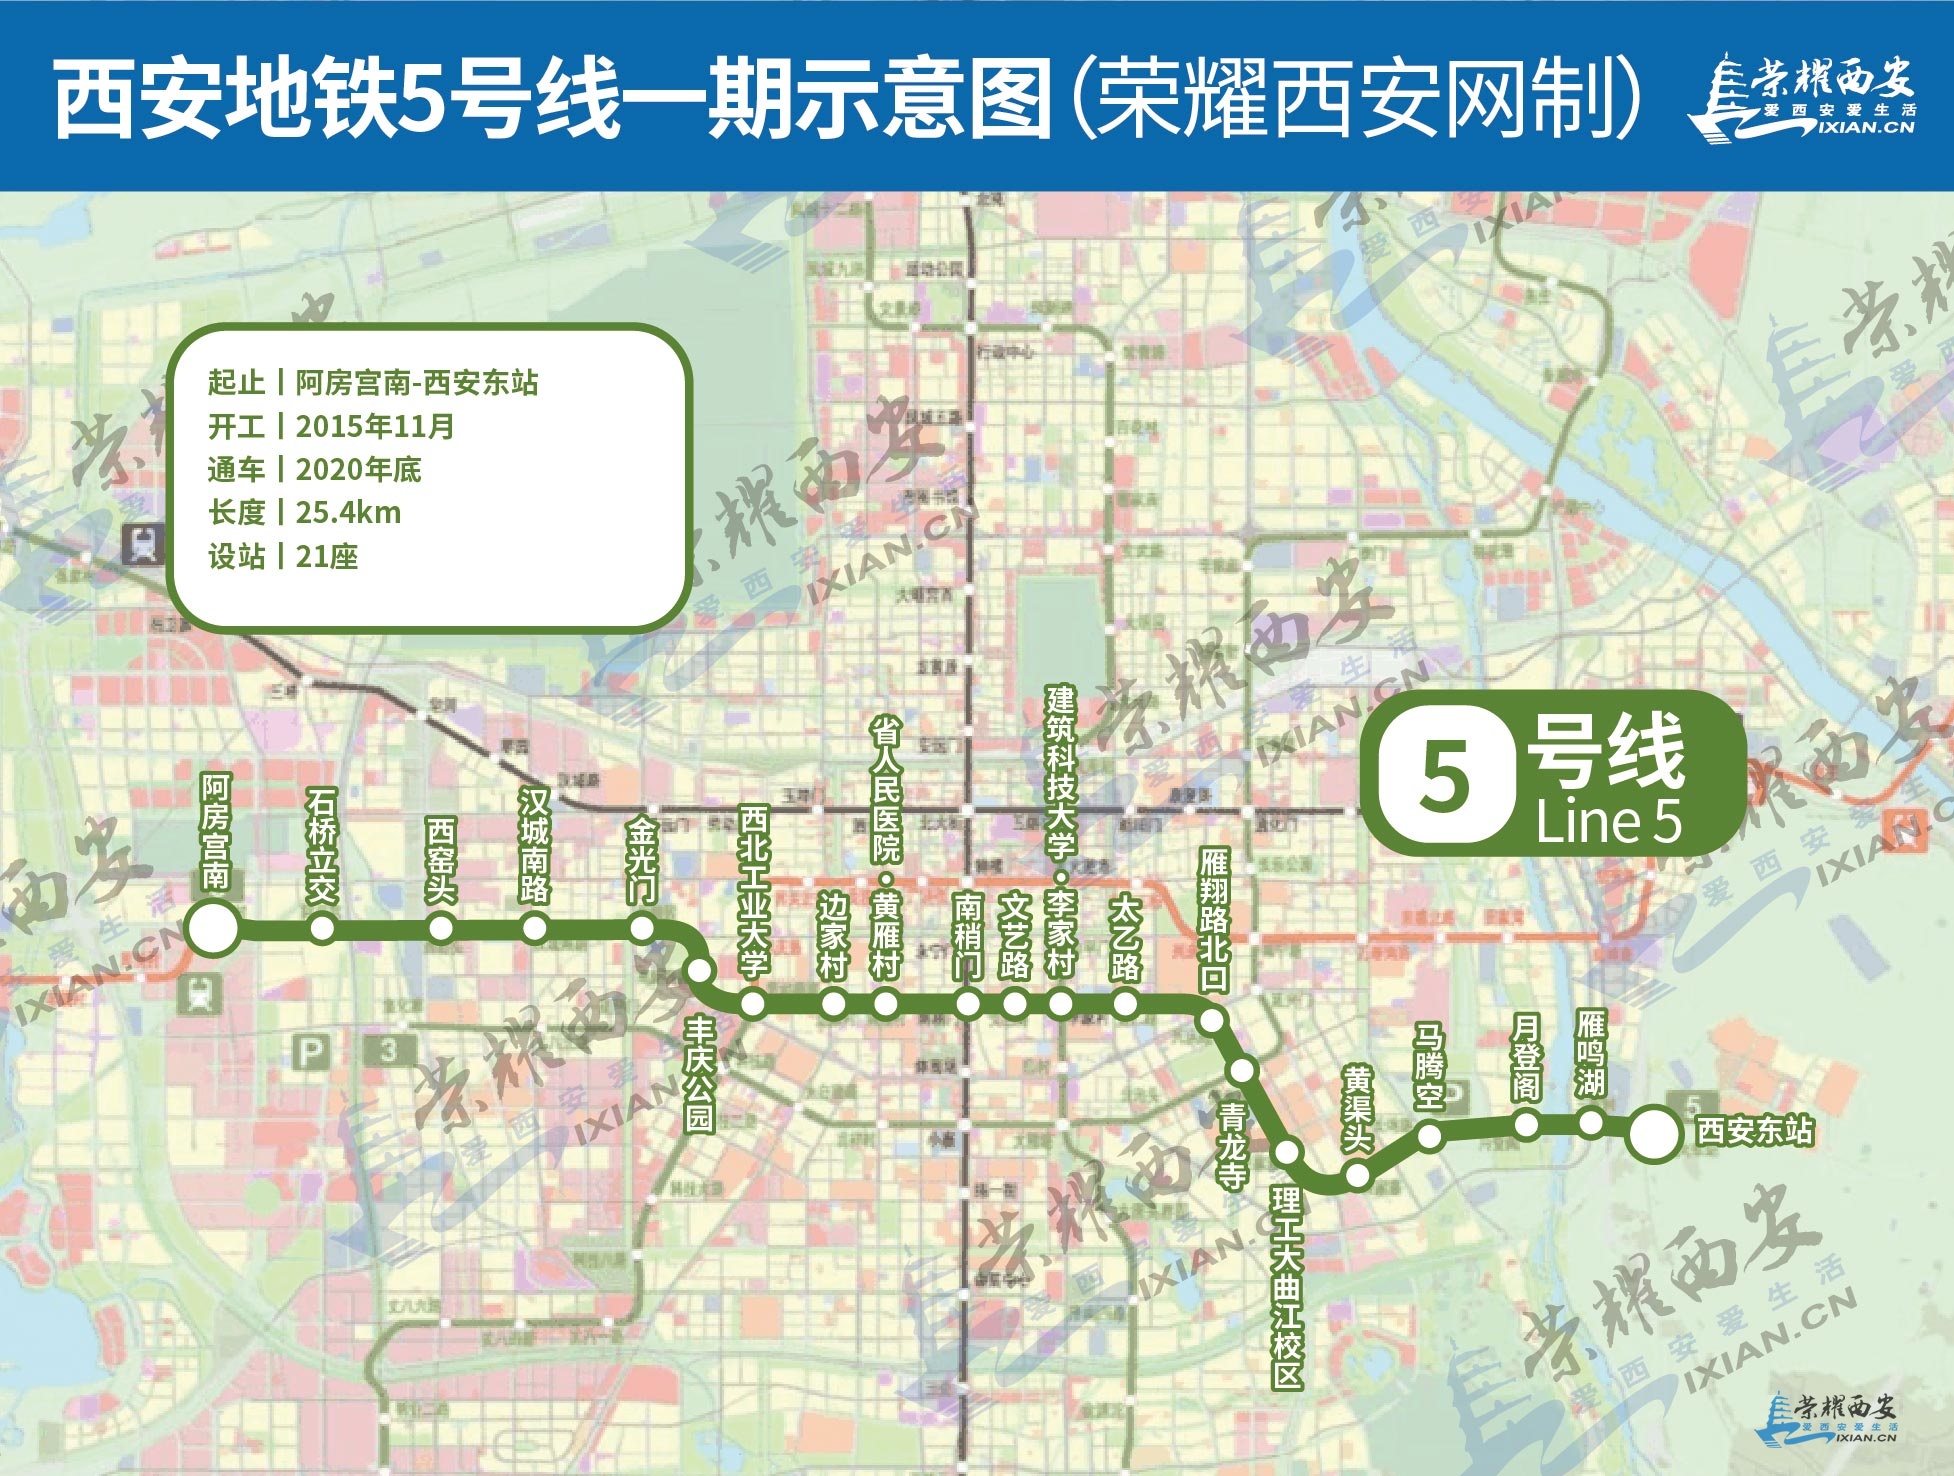 地铁5号线二期全线13座车站已封顶明年与一期同步建成通车西咸融合再